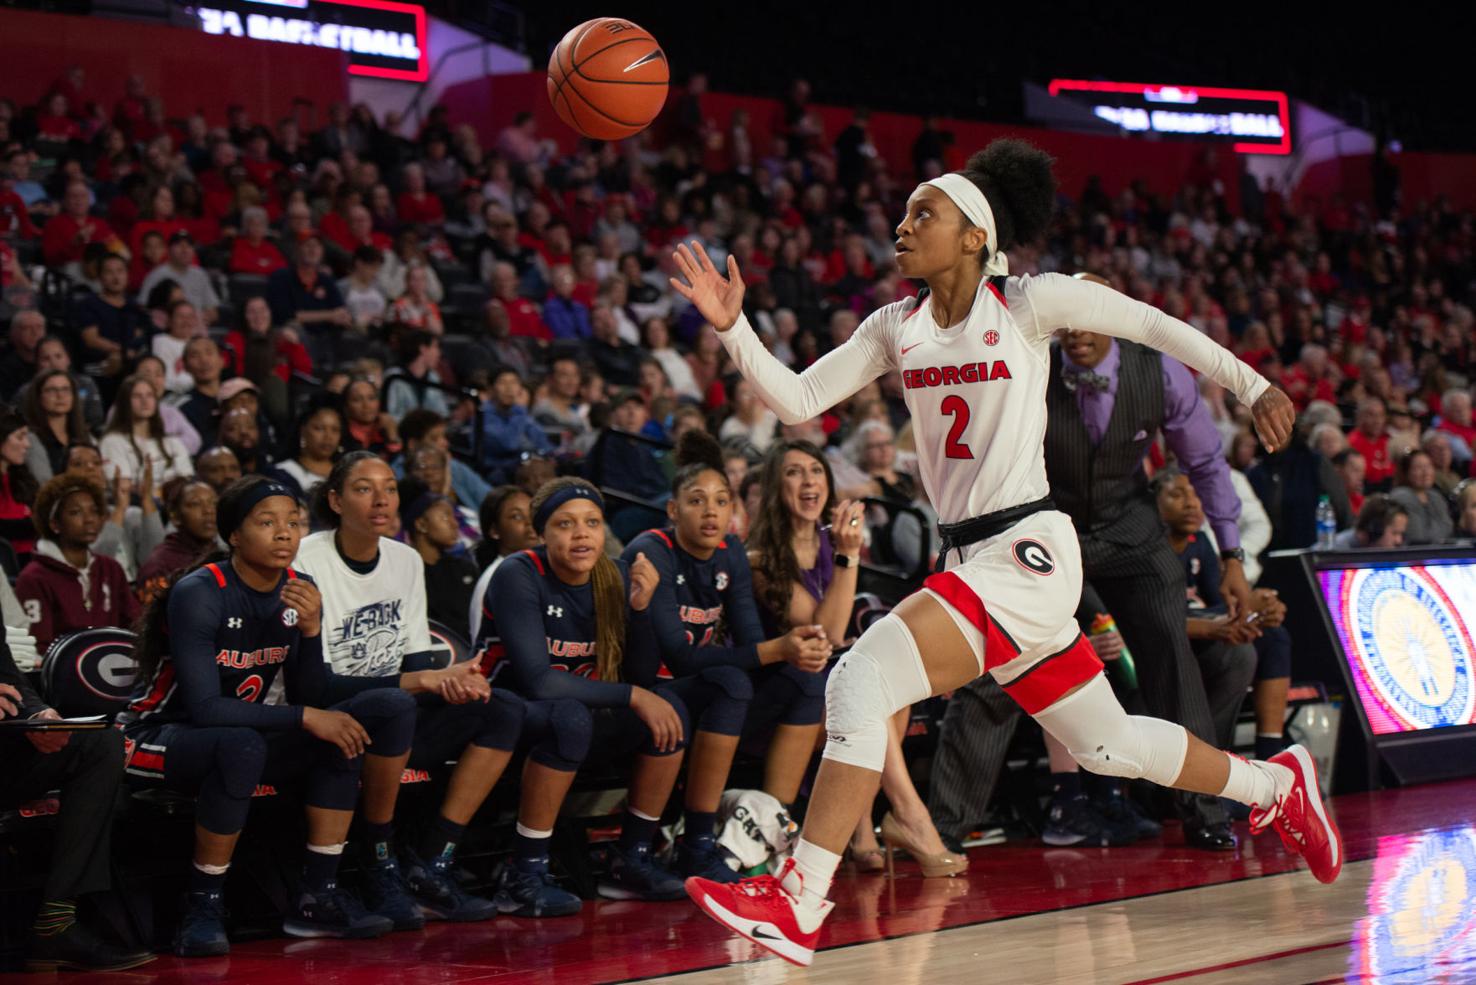 women's basketball picks up speed ahead of Tech matchup